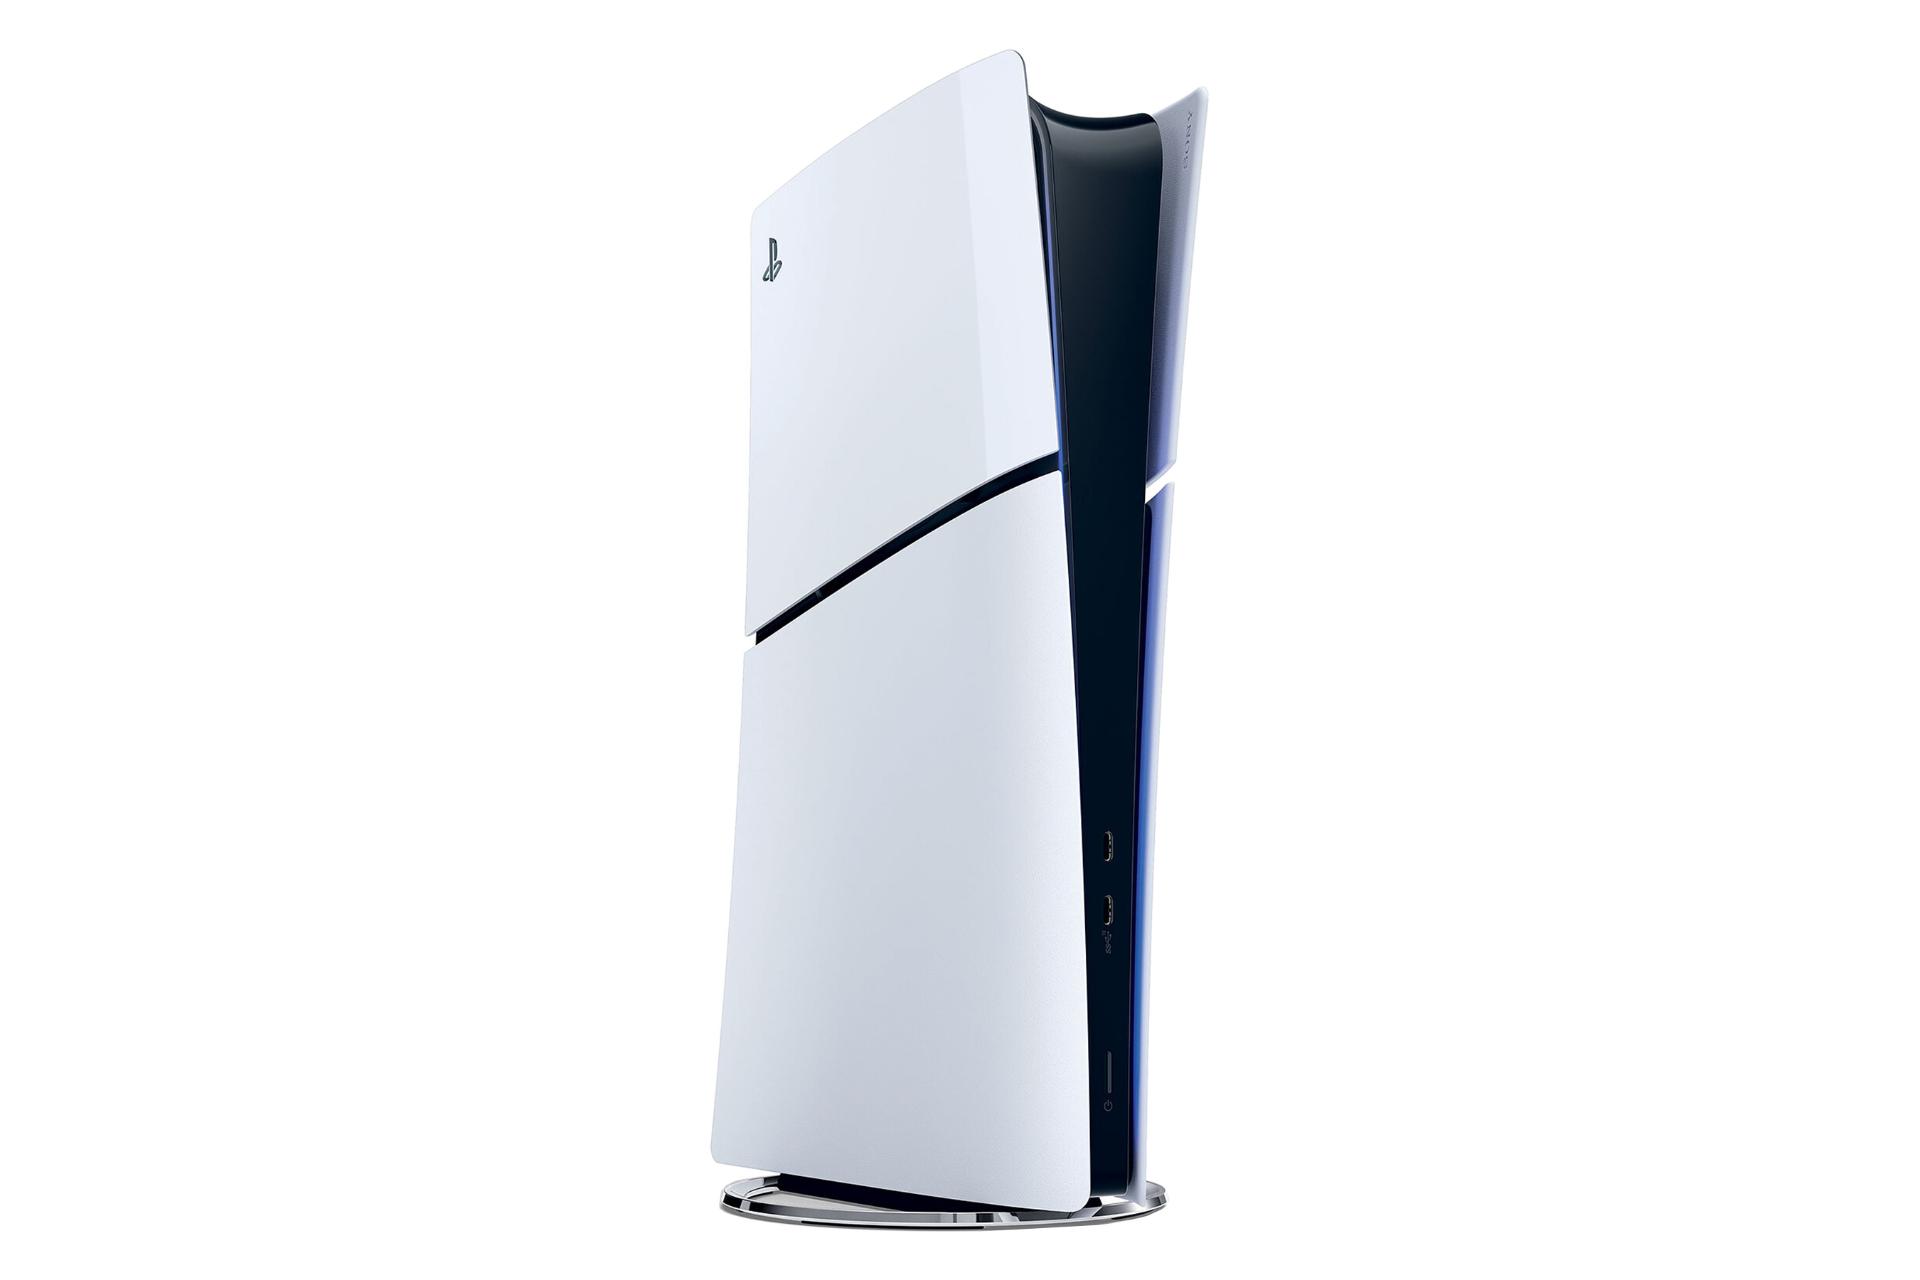 نمای نیمرخ کنسول بازی پلی استیشن 5 اسلیم دیجیتال سونی / Sony PlayStation 5 Slim Digital Edition با نمایش پنل سمت چپ و درگاه های پنل جلو رنگ سفید